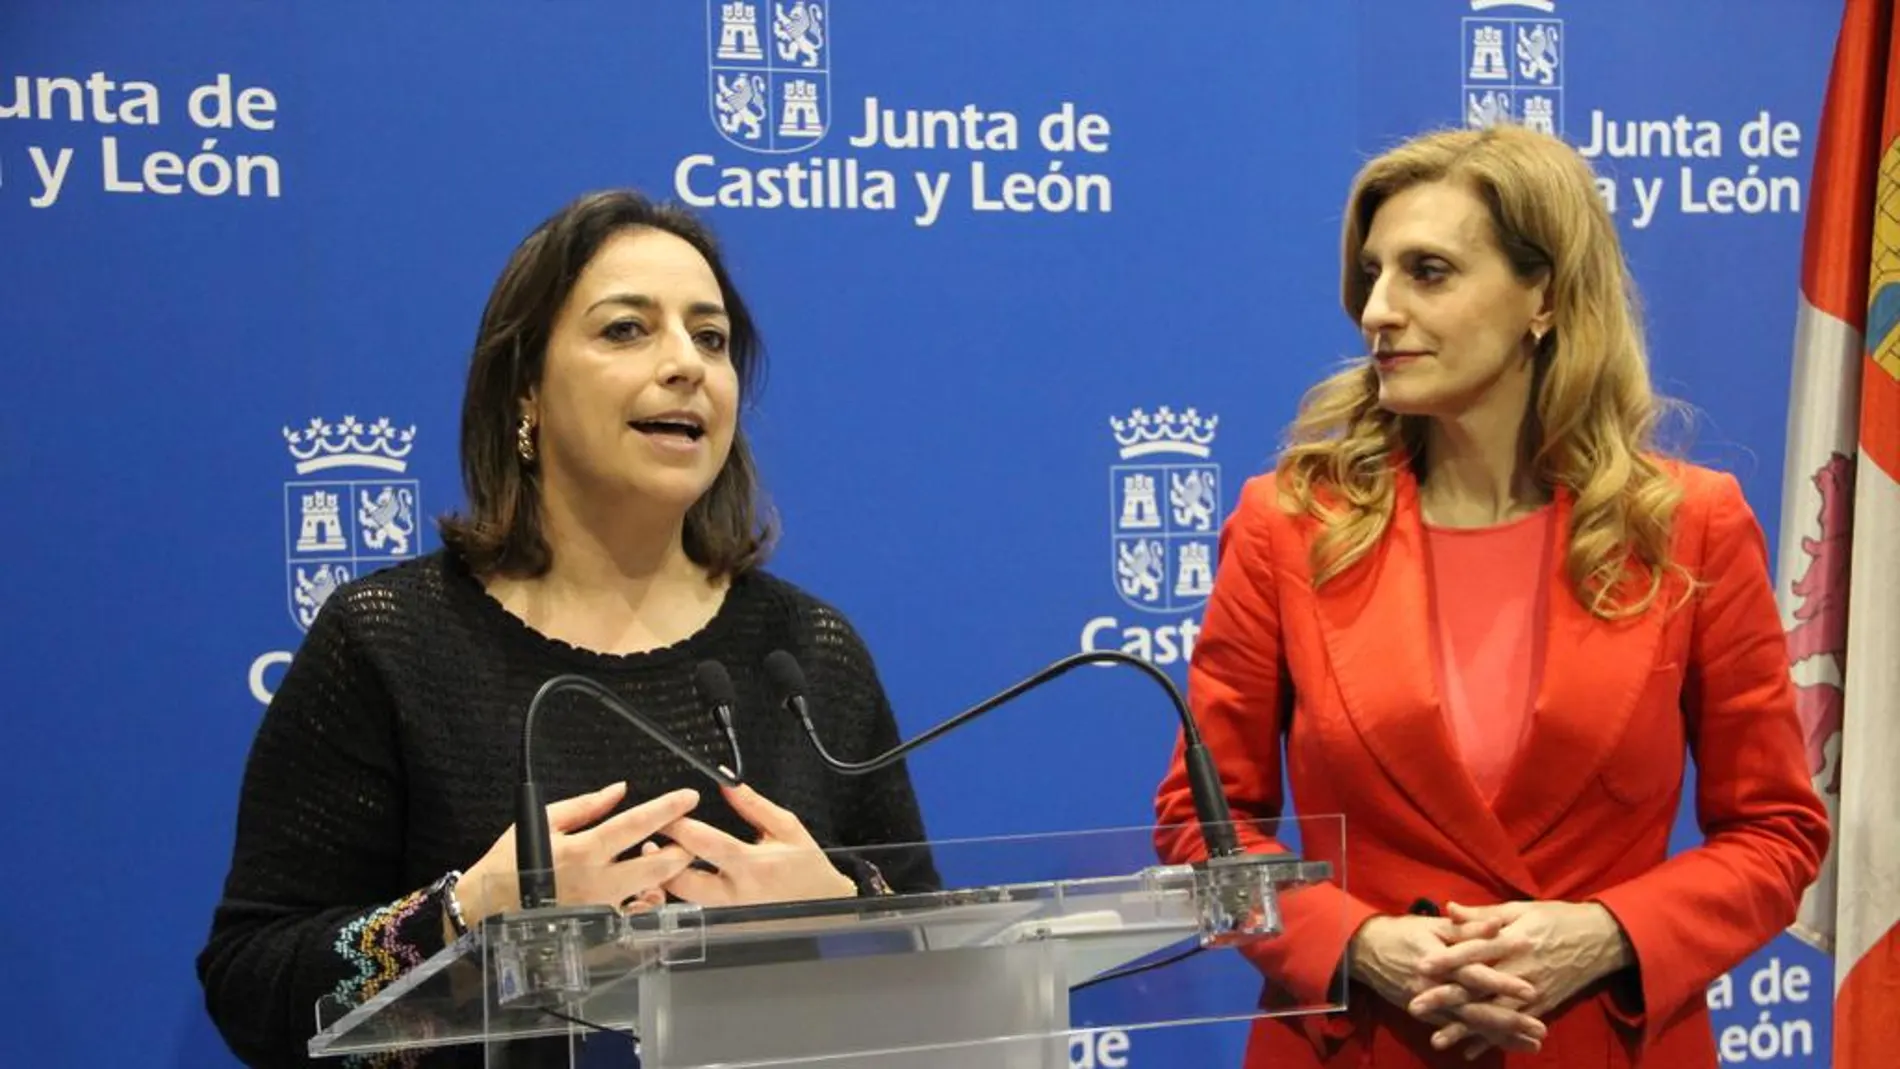 La viceconsejera Mar Sancho y la alcaldesa de Palencia, Miriam Andrés, presentan el concierto